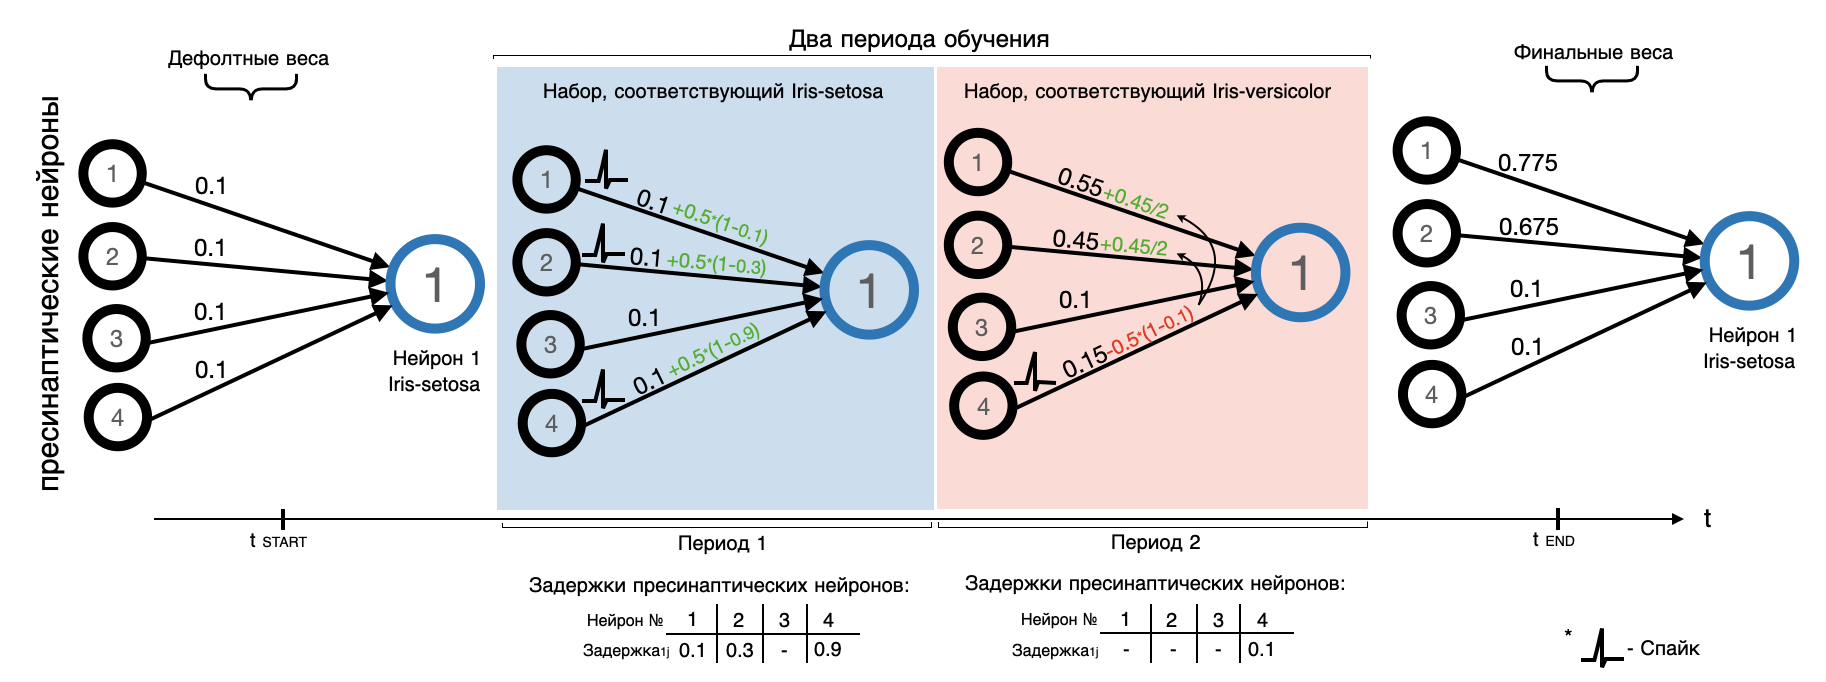 Пример начальной модификации дефолтных весов мини-сети, состоящей из четырех пресинаптических и одного постсинаптического нейрона, за два периода обучения